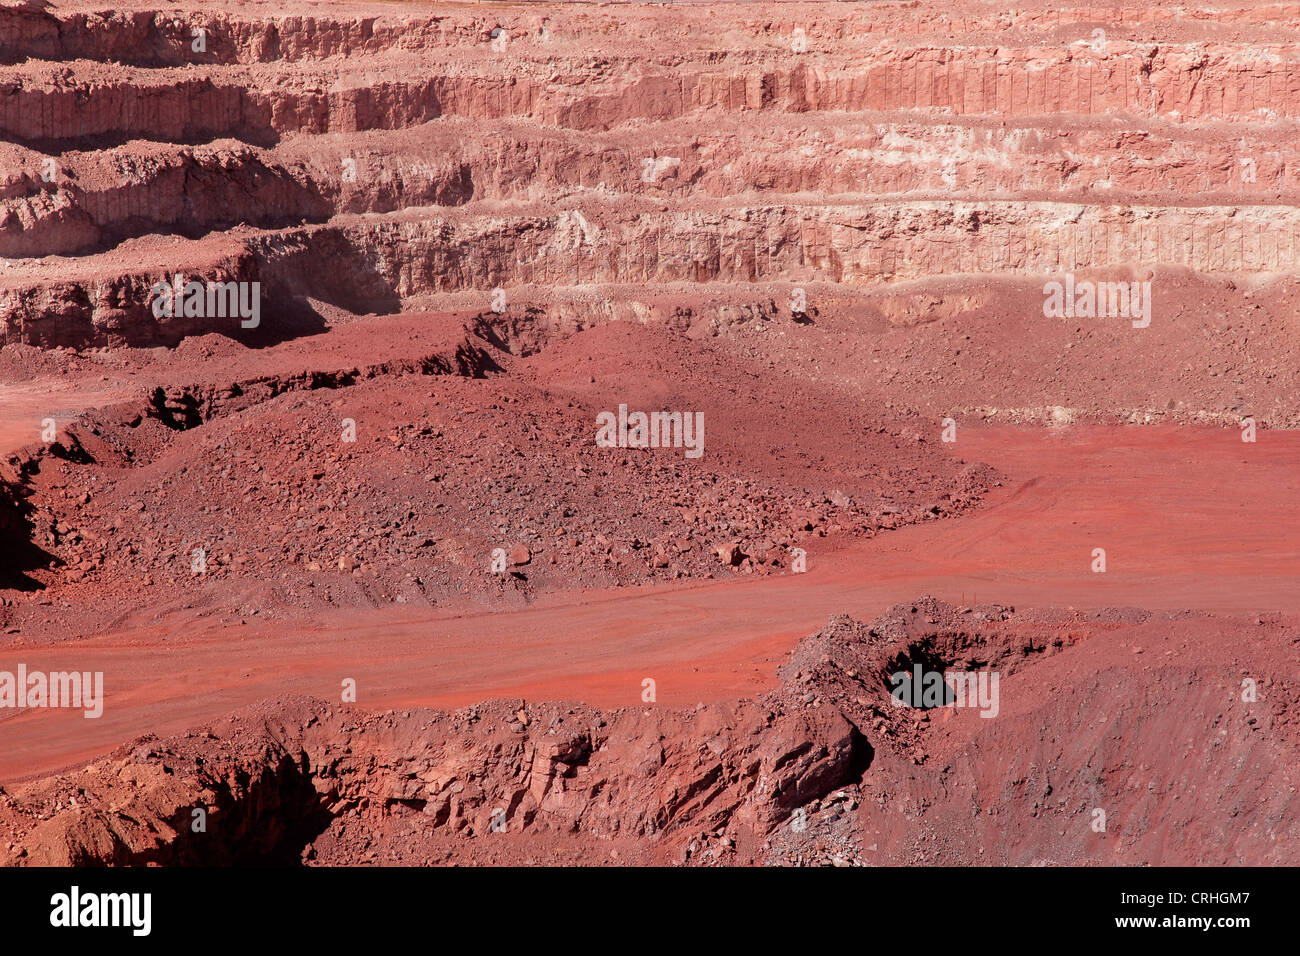 Grande, a cielo abierto de la mina de mineral de hierro que muestra las distintas capas de tierra y hierro mineral enriquecido Foto de stock